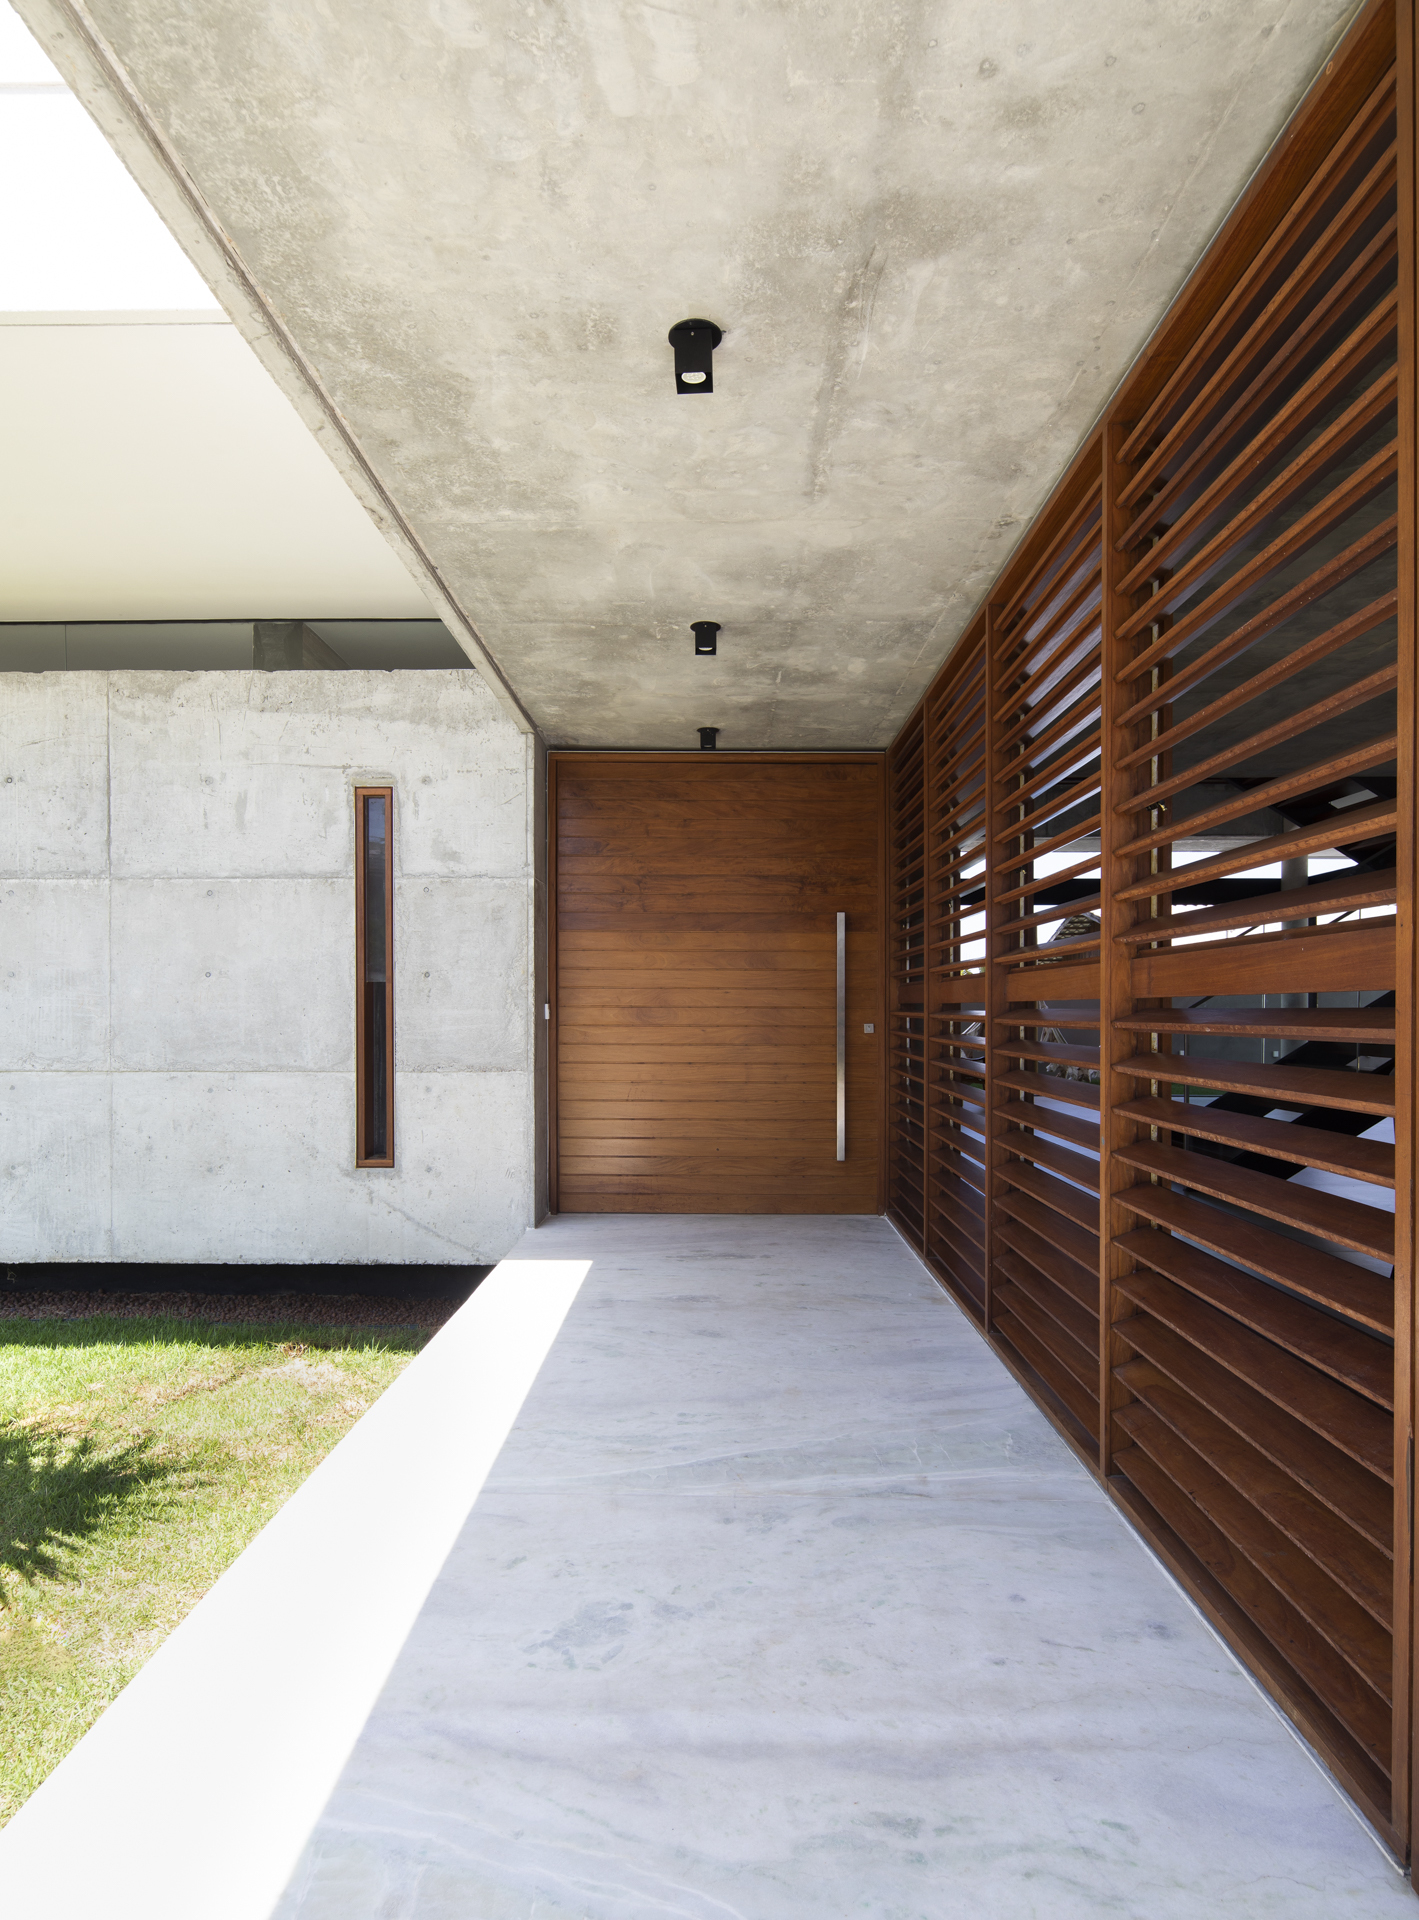 巴西简约独立住宅建筑设计/Martins Lucena Arquitetos